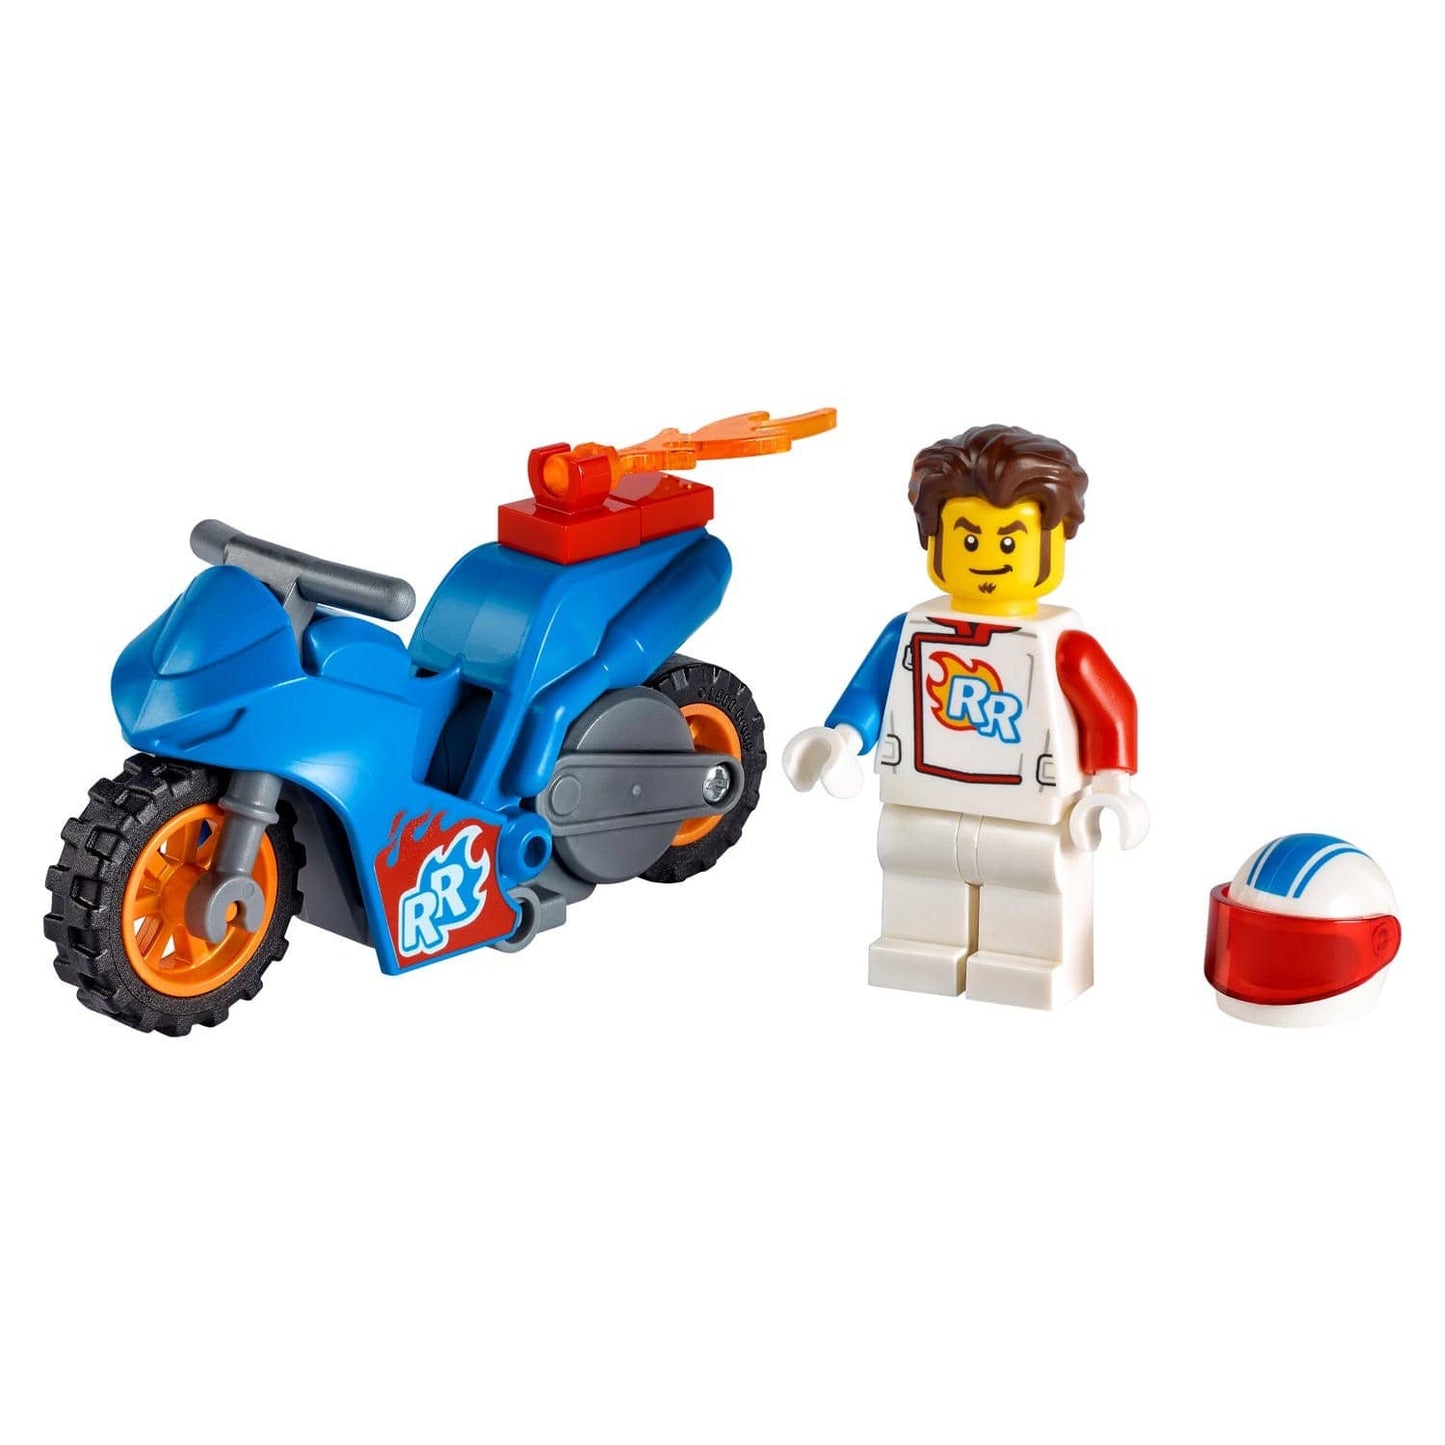 LEGO City Rocket kaszkadőr motorkerékpár 60298